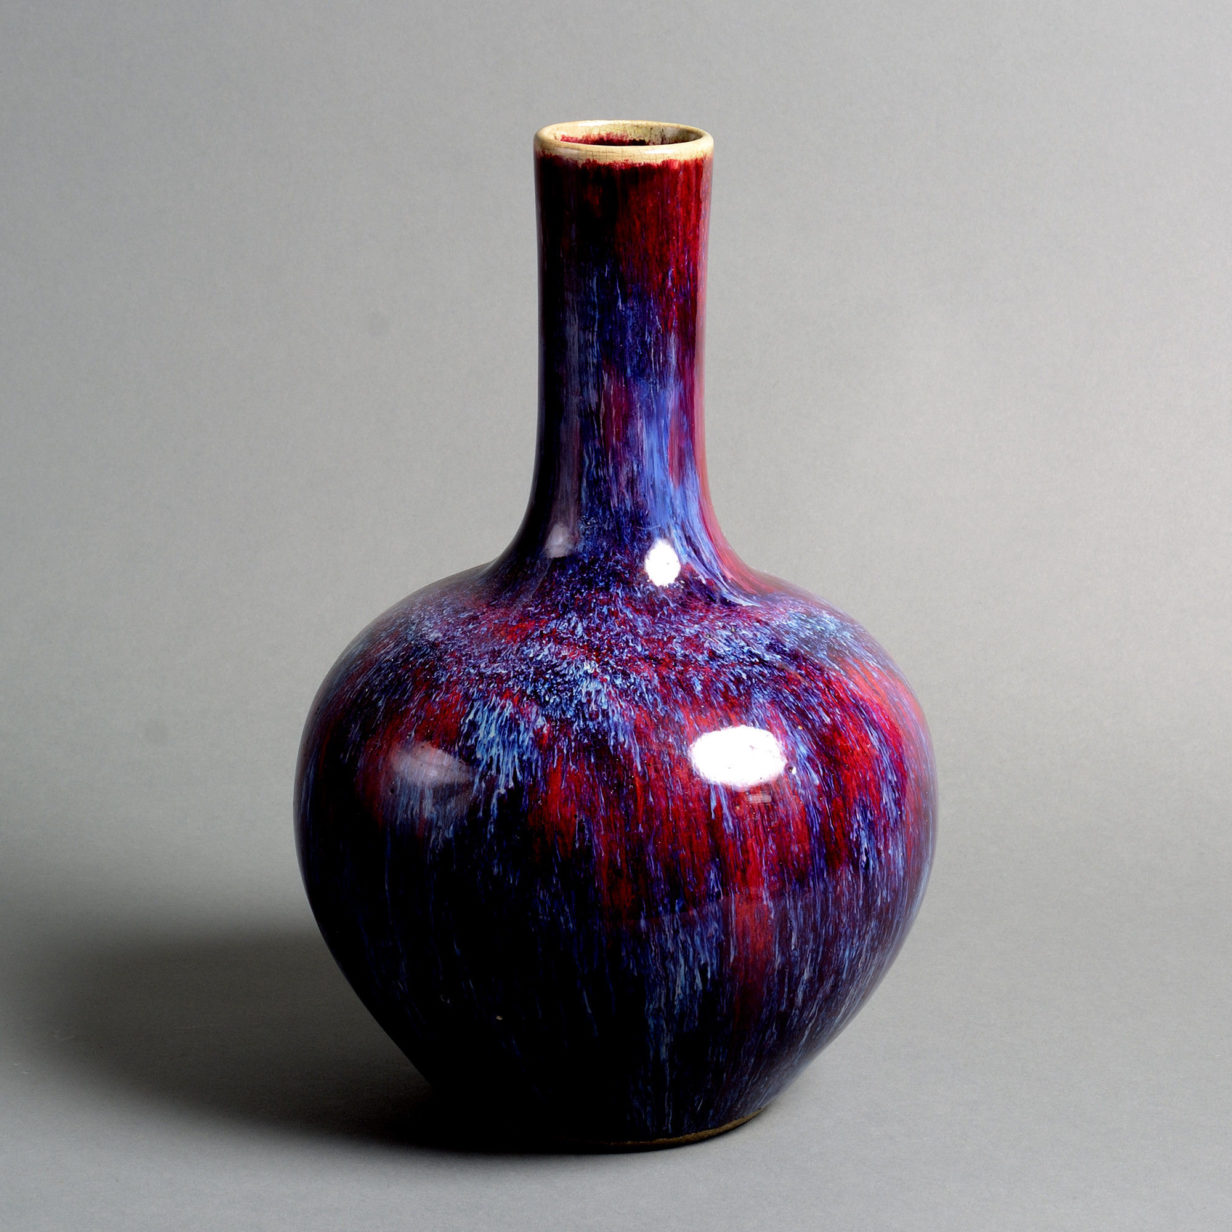 A 19th century qing period flambé glazed bottle vase